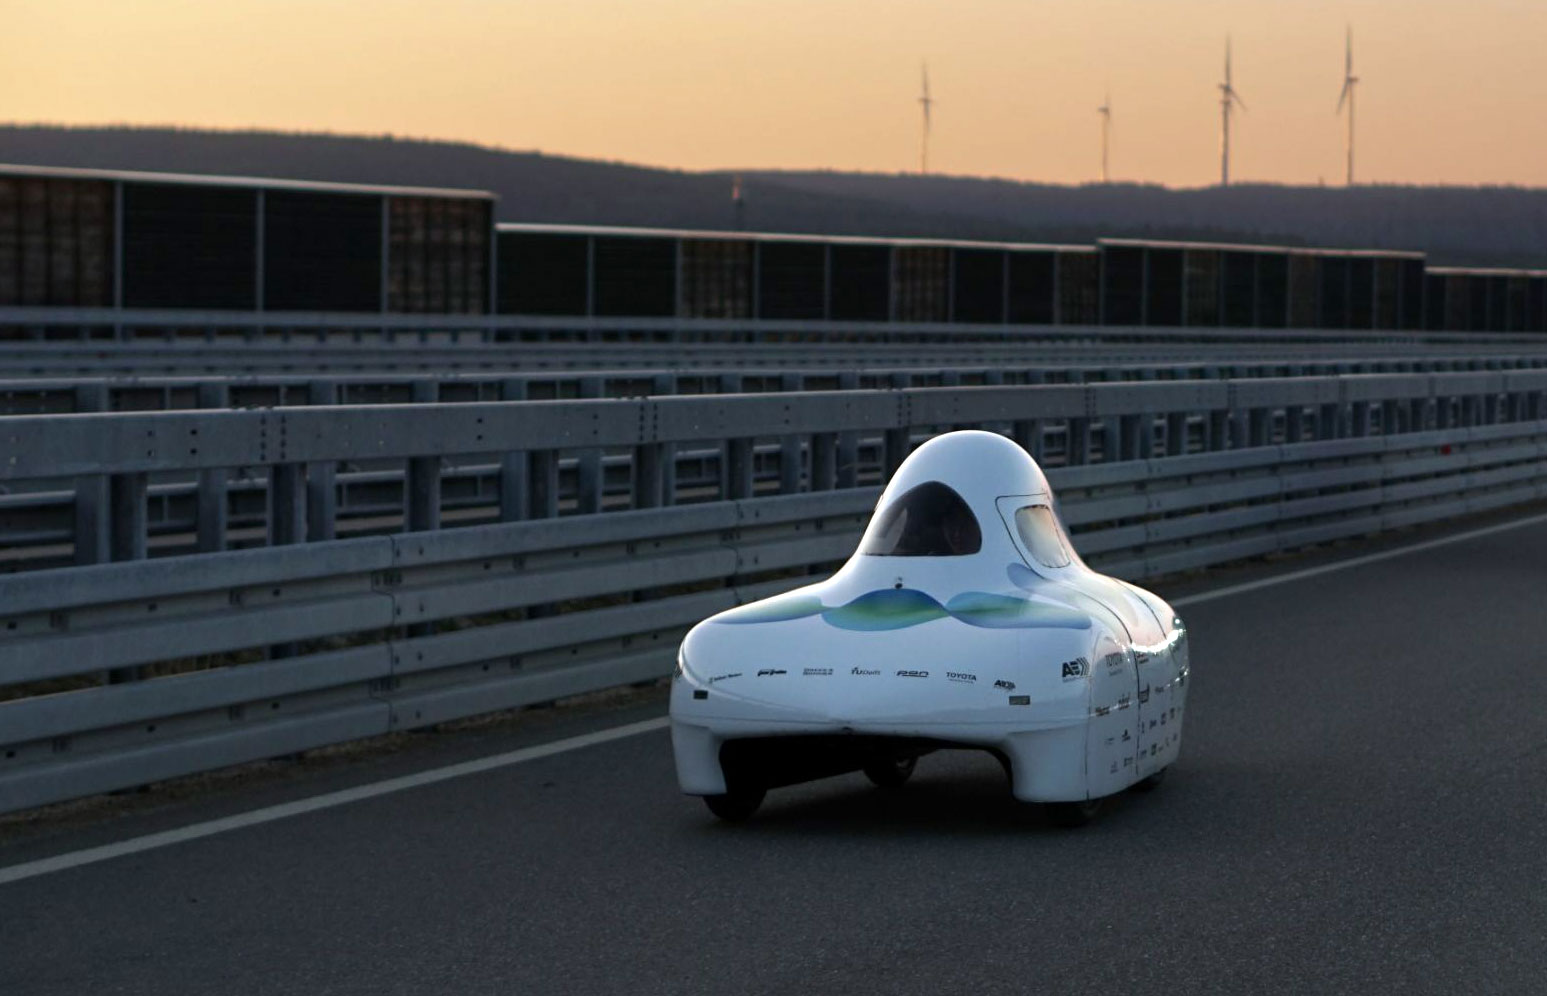 Cette petite voiture a parcouru 2488 kilomètres avec moins de 1 kg d'hydrogène